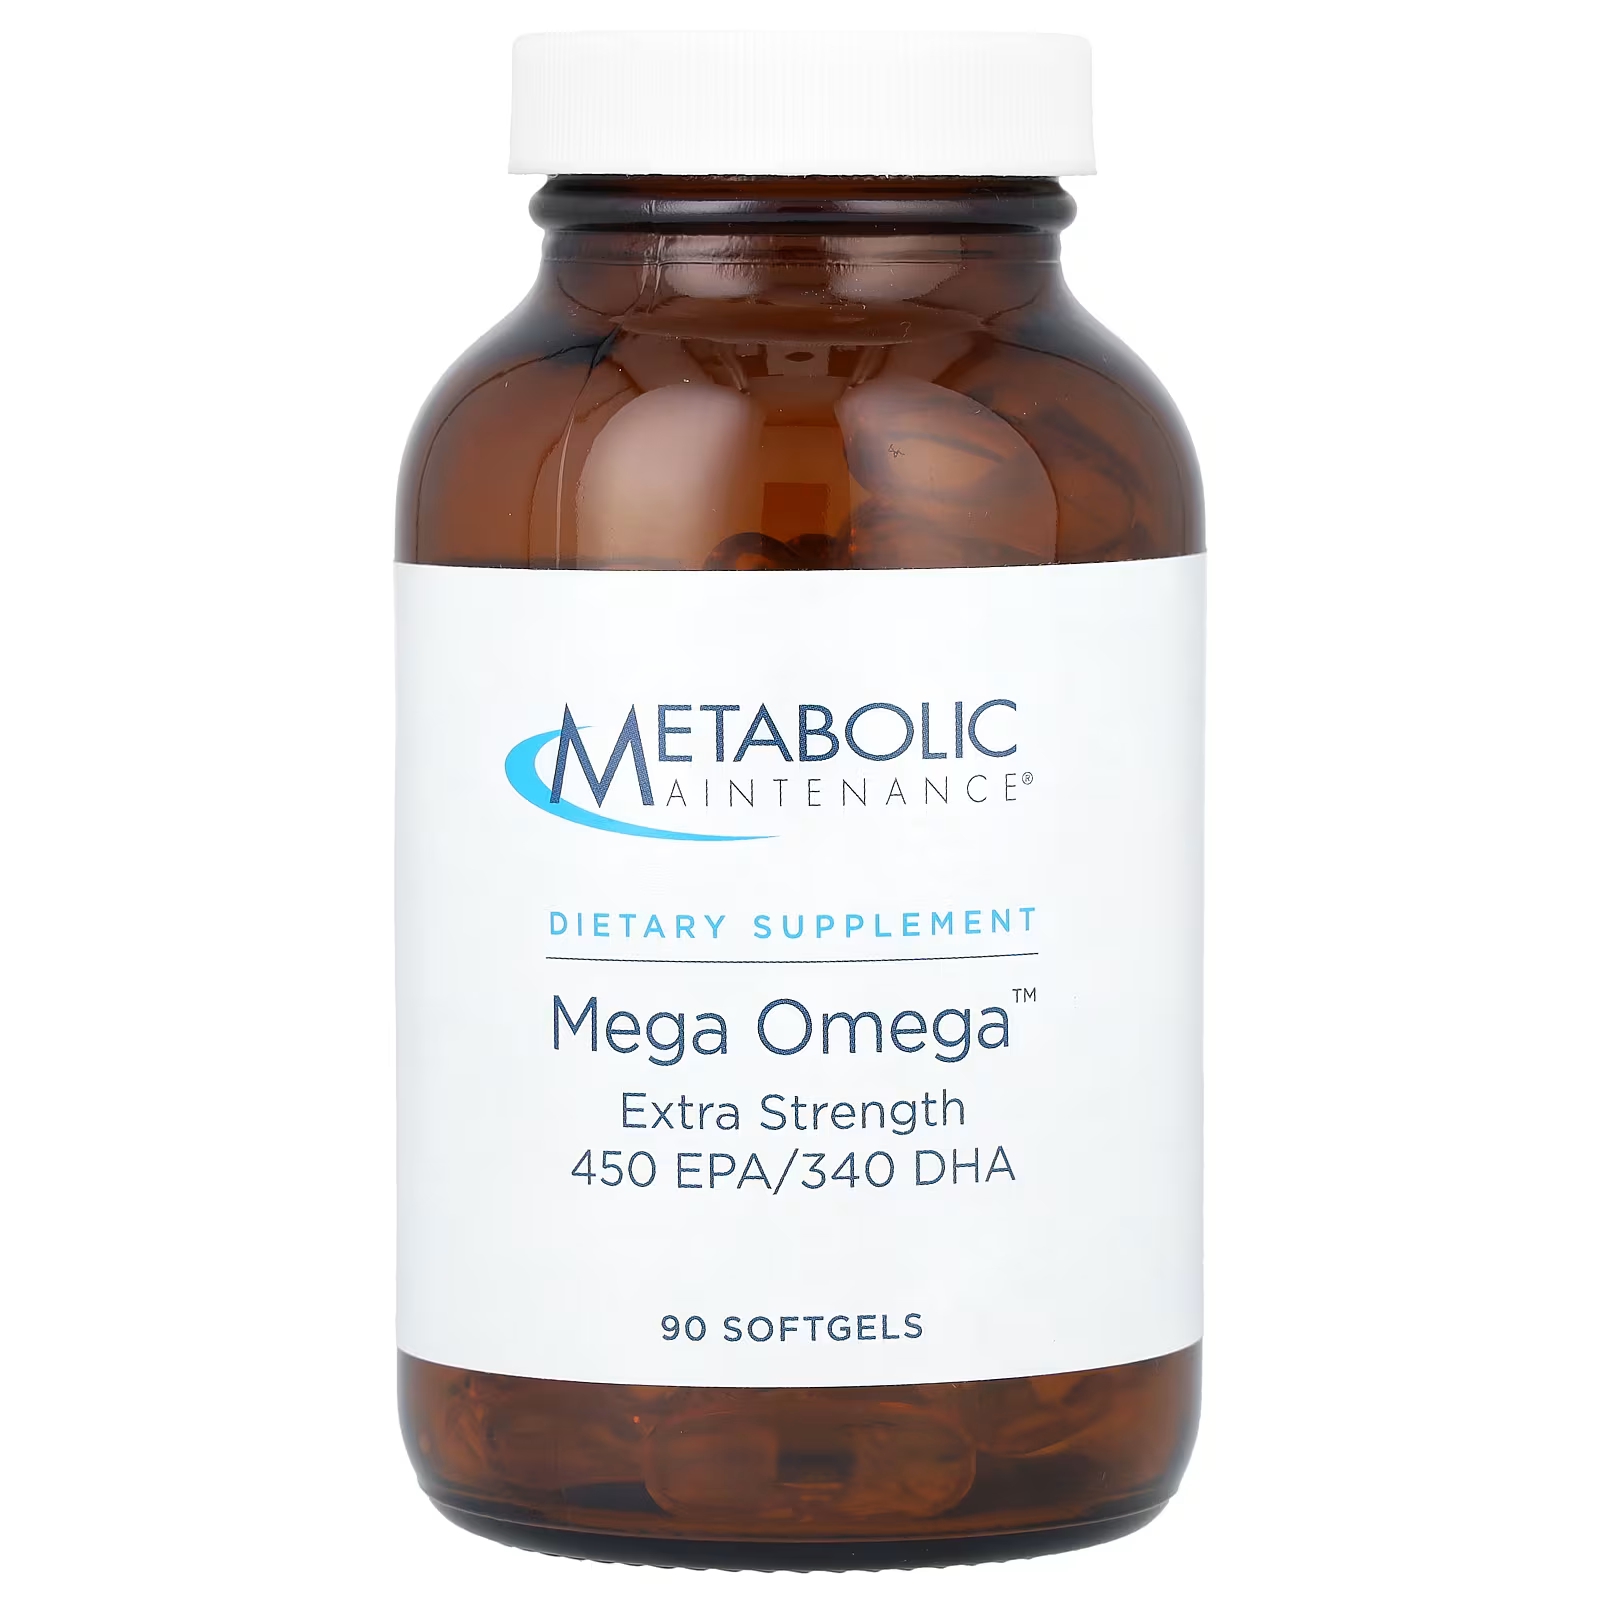 Метаболическое обслуживание Mega Omega Extra Strength, 90 мягких таблеток Metabolic Maintenance